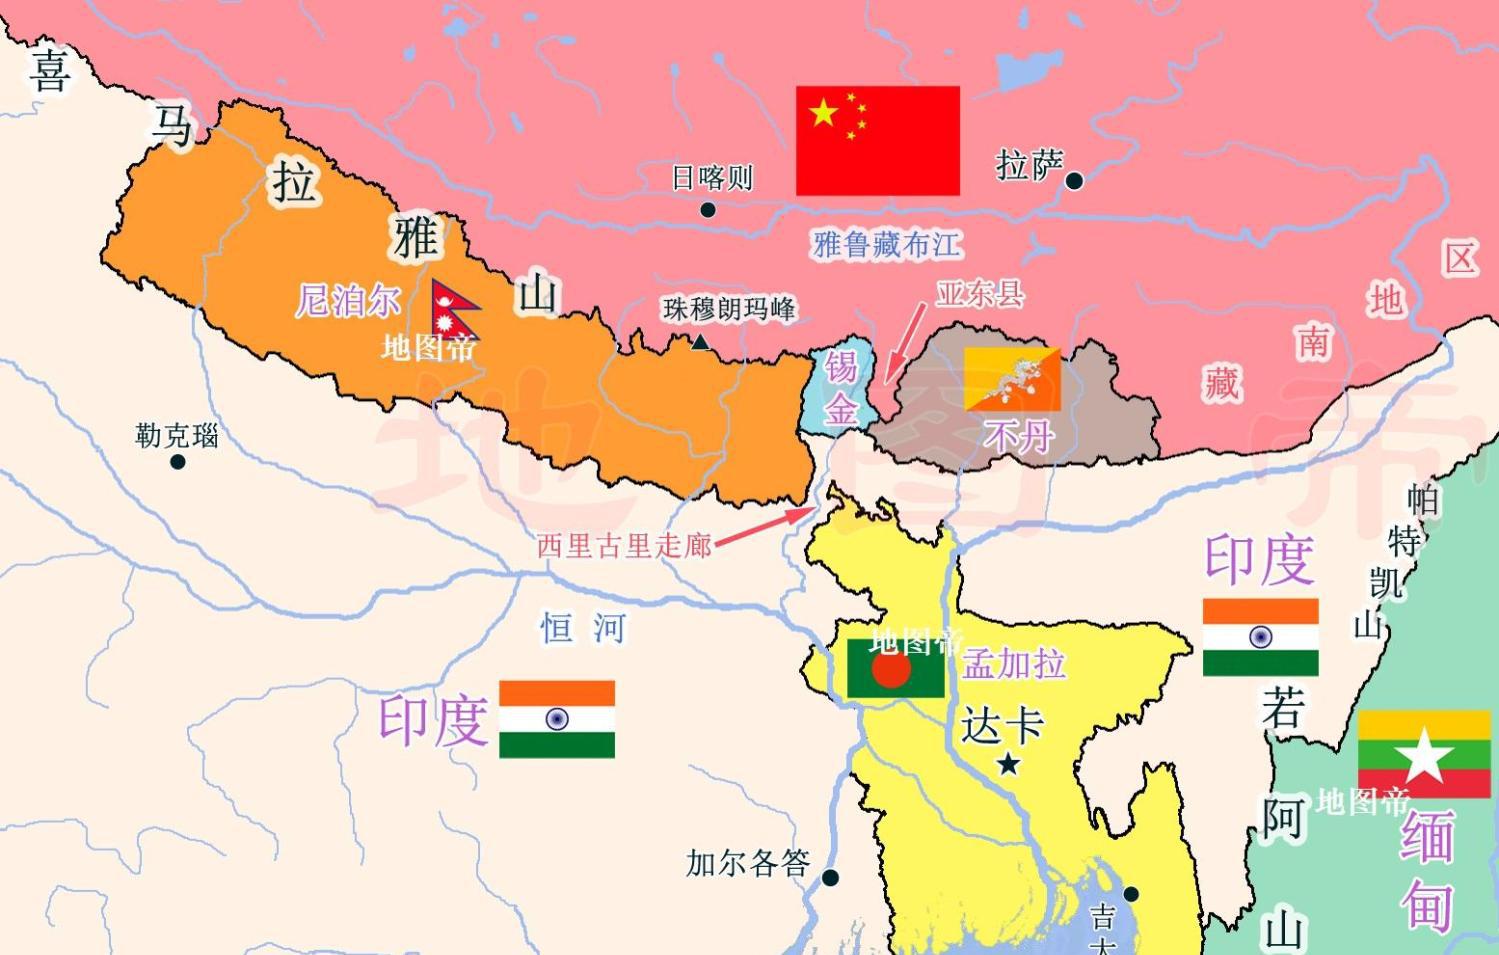 锡金,曾是靠近中国的最小藩属国,面积只有7096平方公里,比我国广州